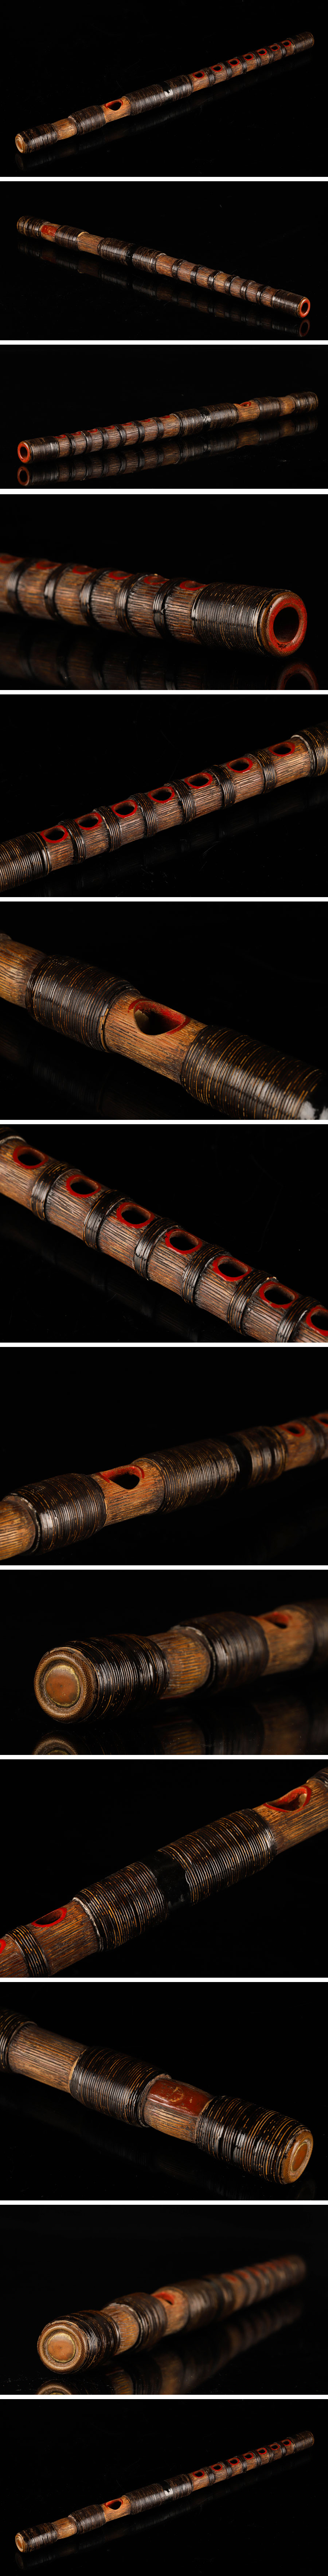 セール在庫【琴》送料無料 時代和器 雅 竹造 龍笛 横笛 DB633 龍笛、竜笛